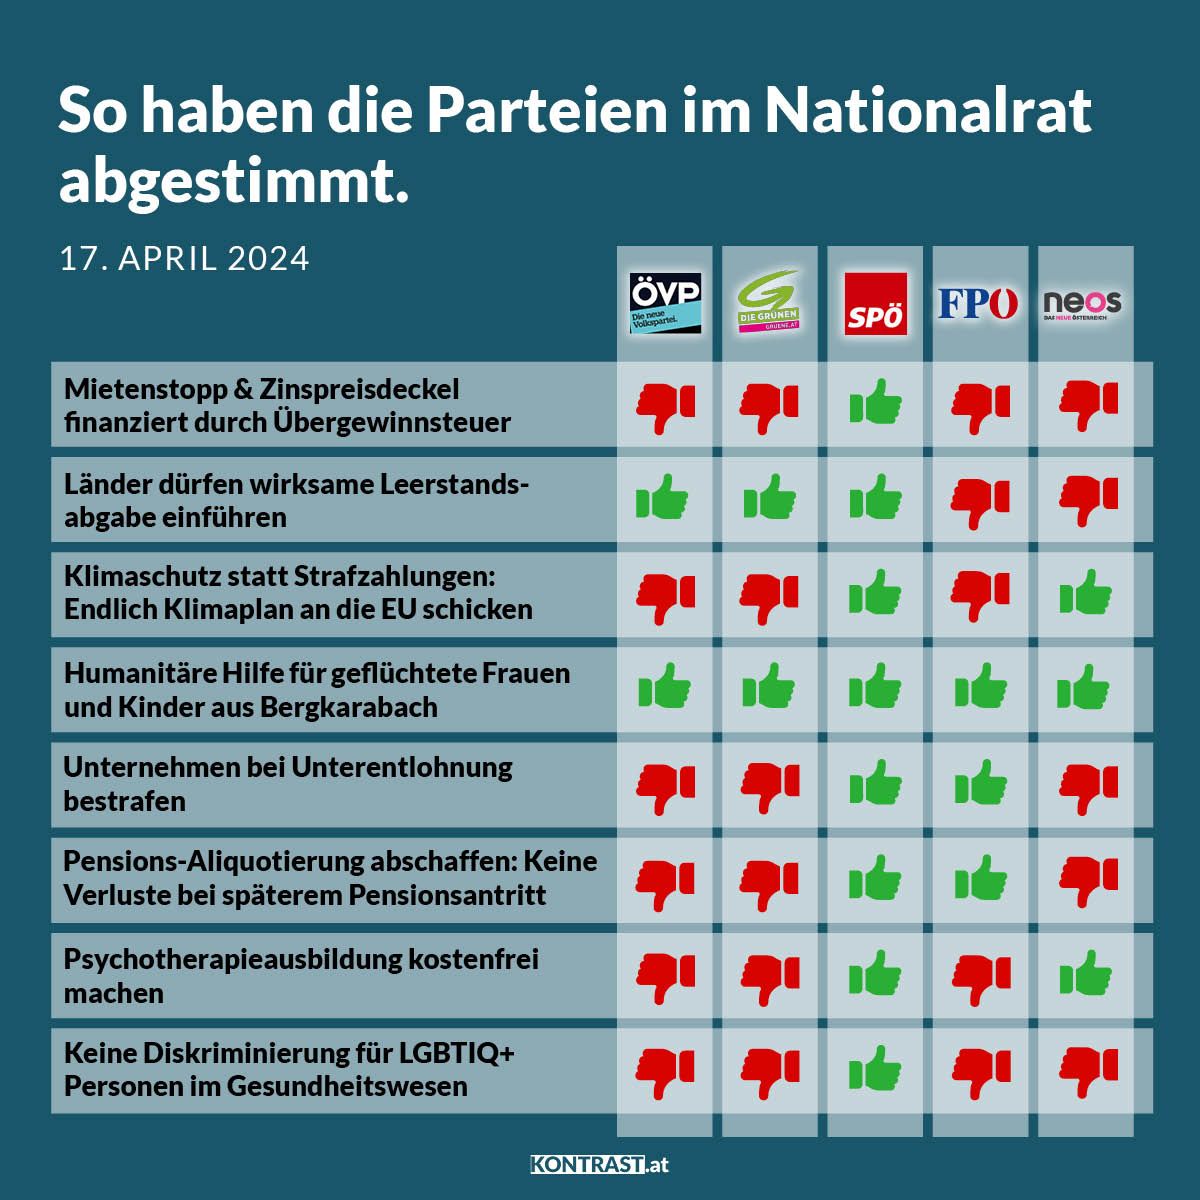 Nationalratssitzung vom 17. April 2024: So haben die Parteien abgestimmt!